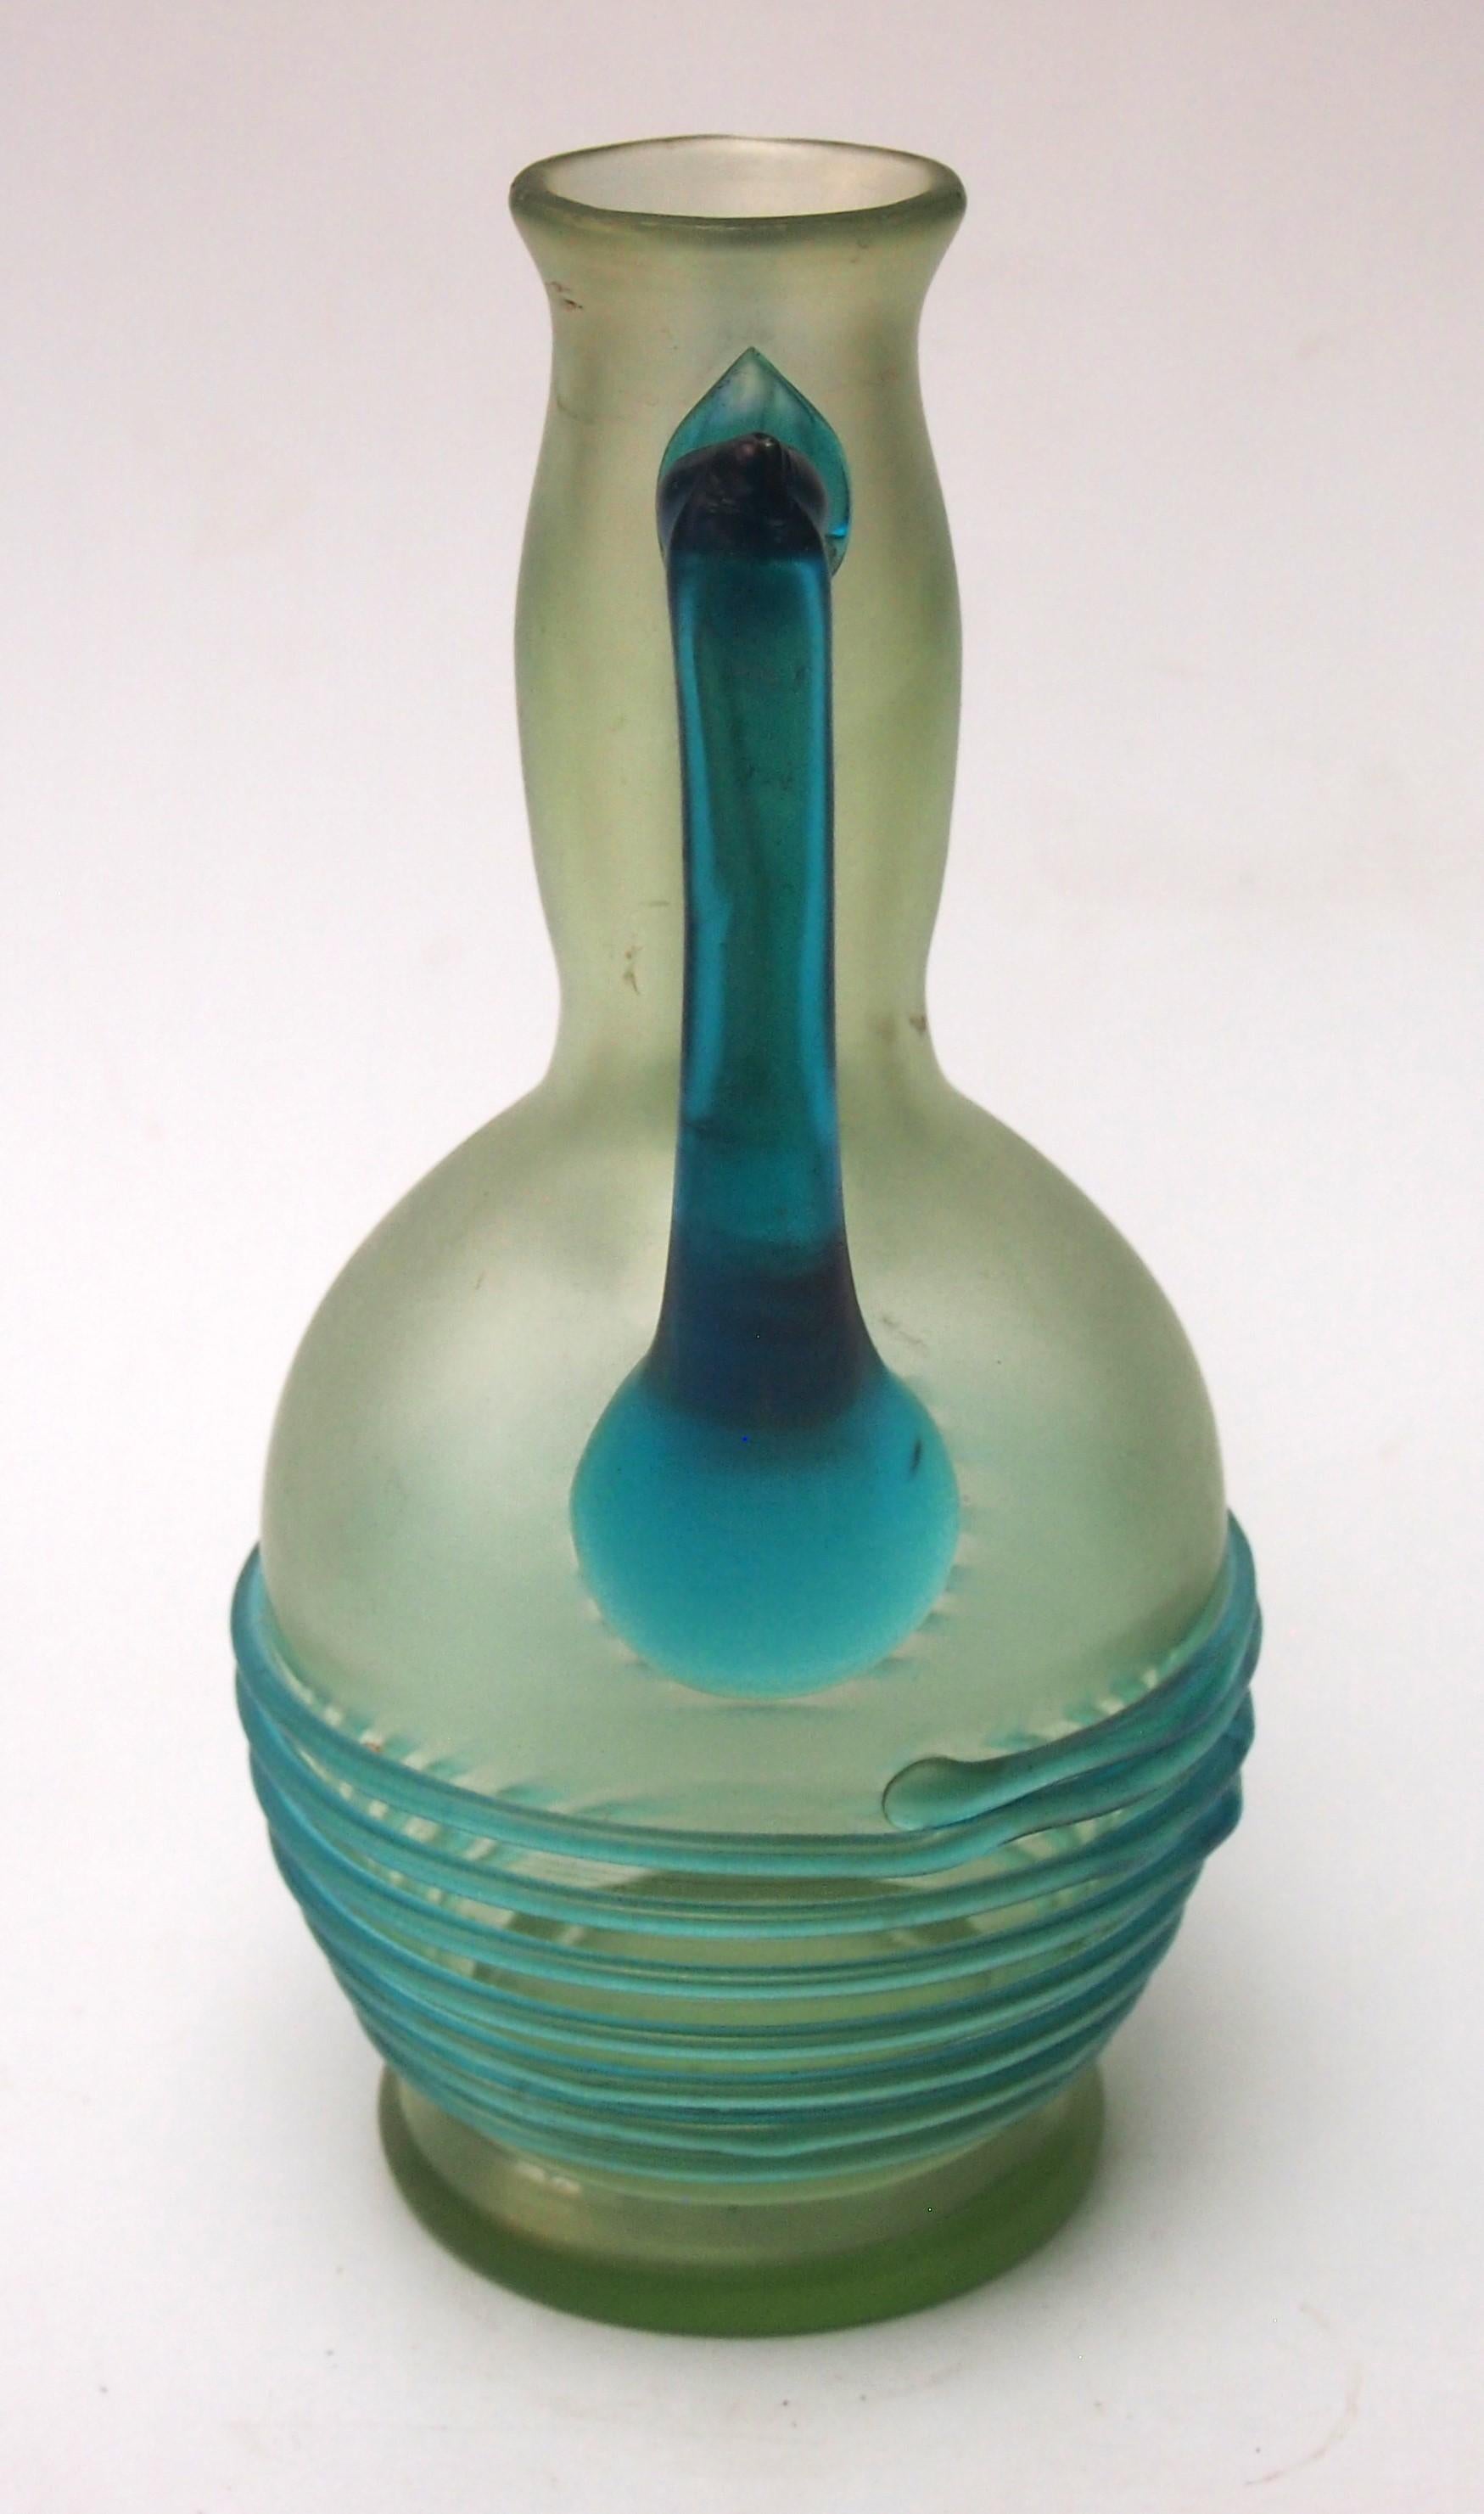 Pichet/vase inhabituel à motif Ophheus de Loetz - Le motif Opheus, bien documenté, est rare ; il a généralement un fond Olympia (clair) avec des fils bleu clair régulièrement enroulés ; parfois, il a aussi des prunts mamelonnés bleu clair (mais pas